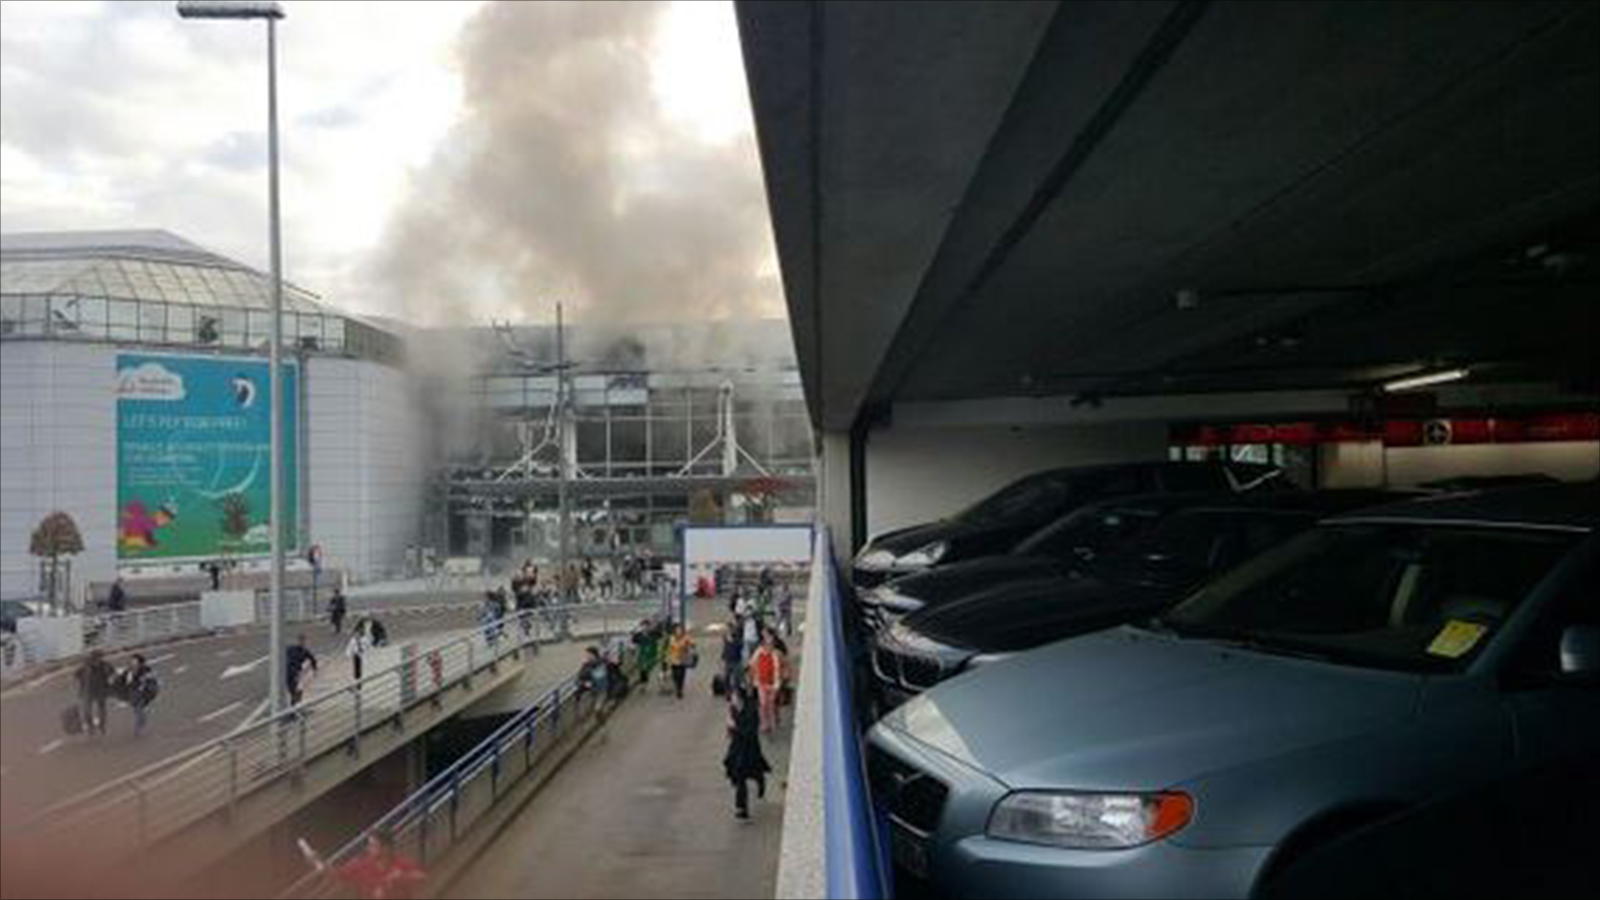 عاجل: تفجيرات في مطار بروكسيل Brussels Airport ببلجيكا